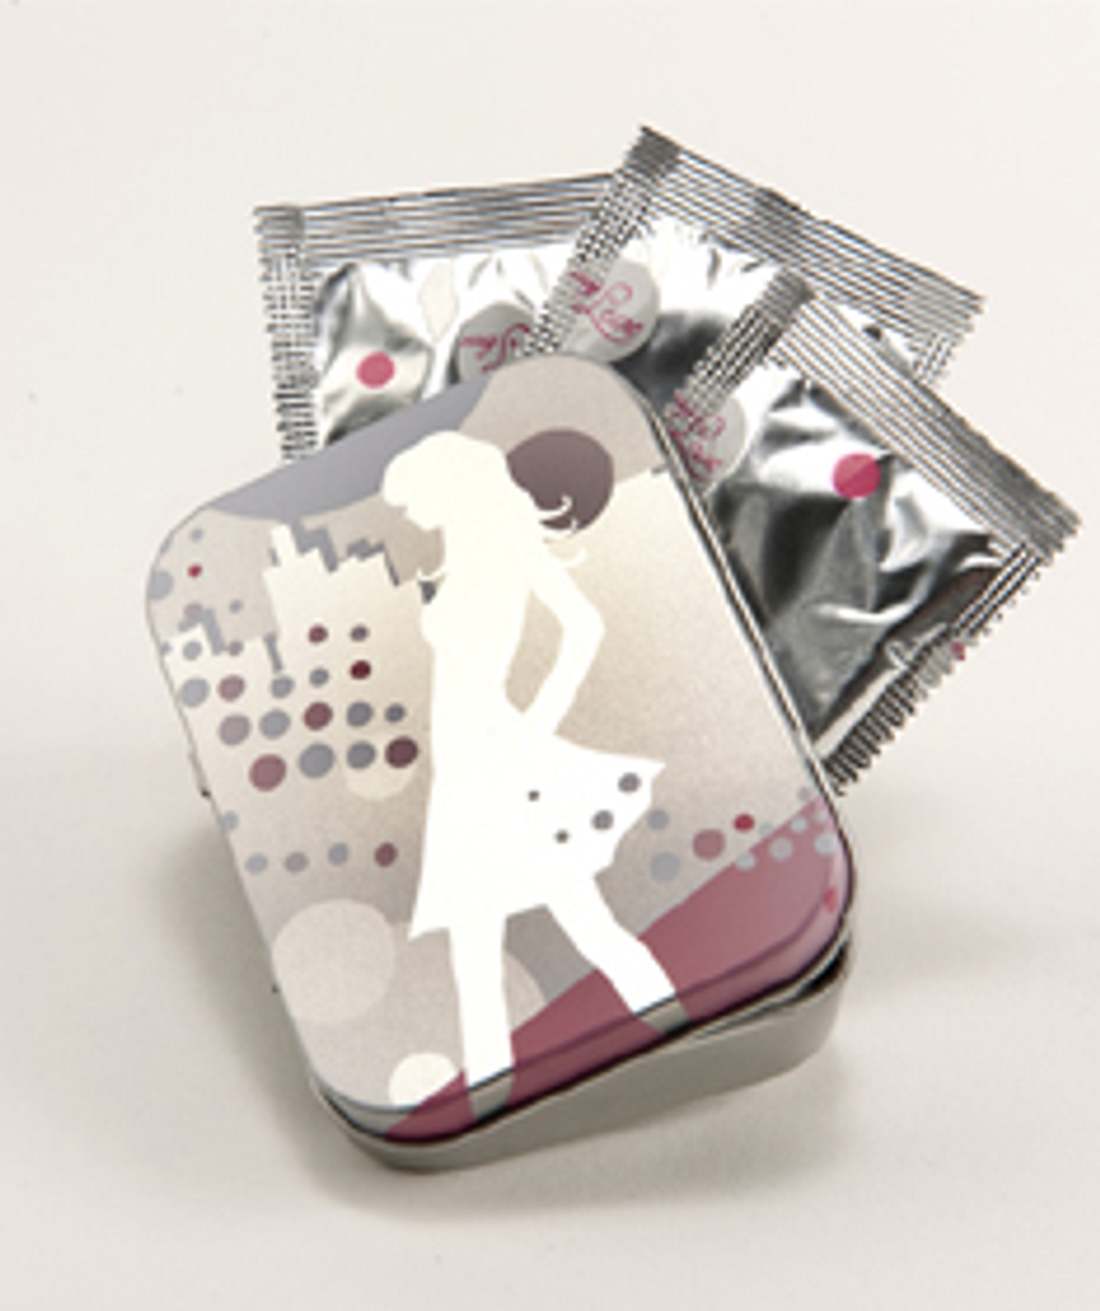 Kondome stylisch aufbewahren!